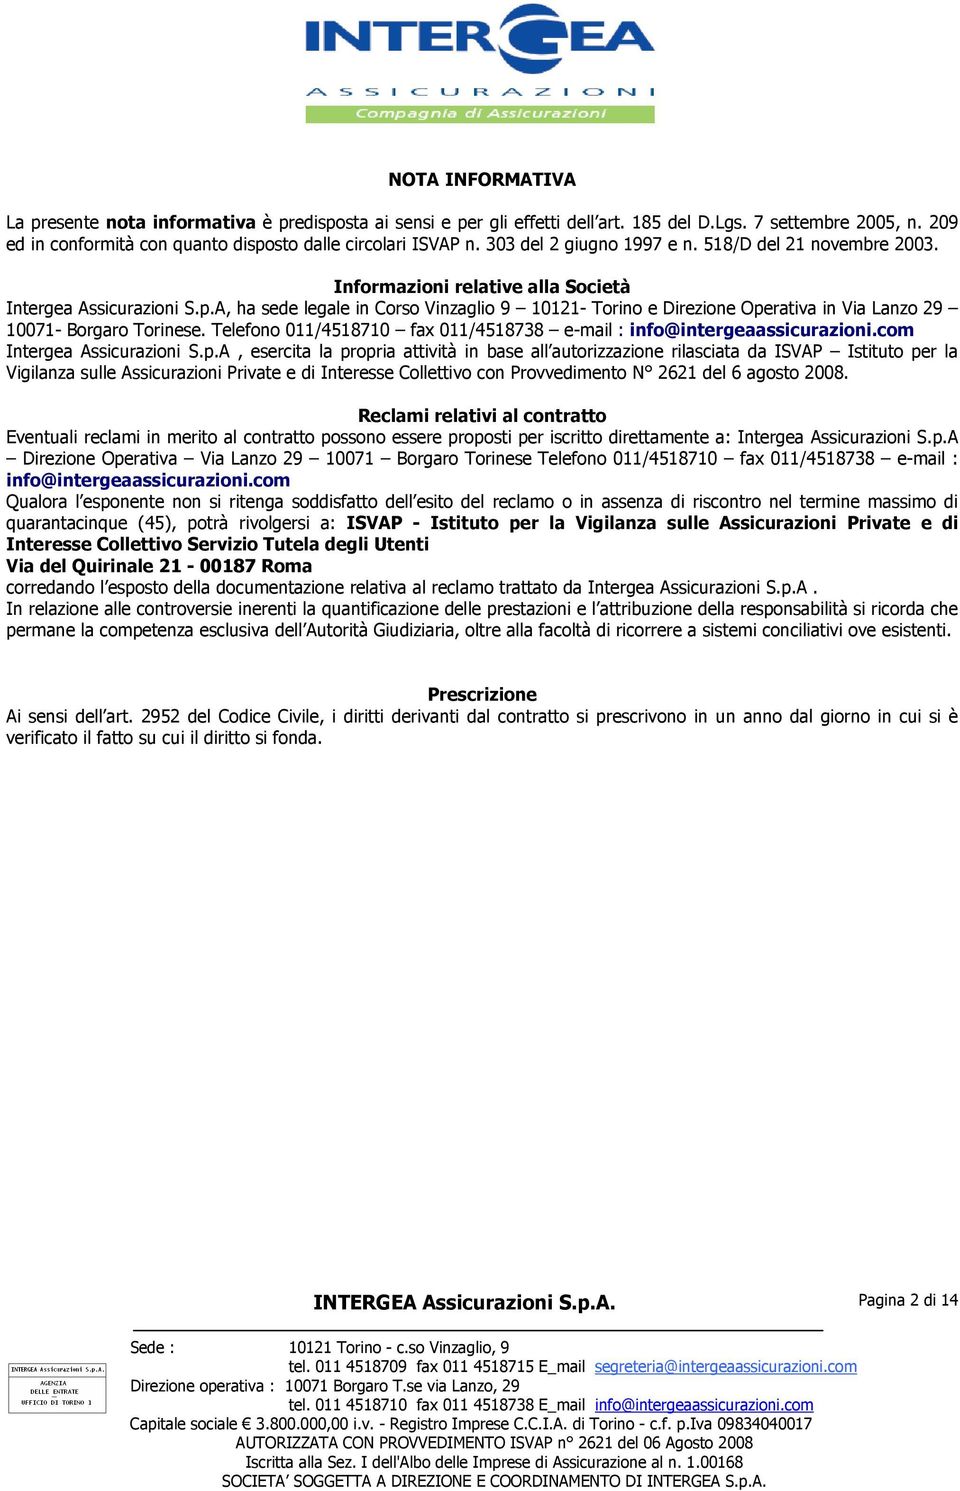 A, ha sede legale in Corso Vinzaglio 9 10121- Torino e Direzione Operativa in Via Lanzo 29 10071- Borgaro Torinese. Telefono 011/4518710 fax 011/4518738 e-mail : info@intergeaassicurazioni.